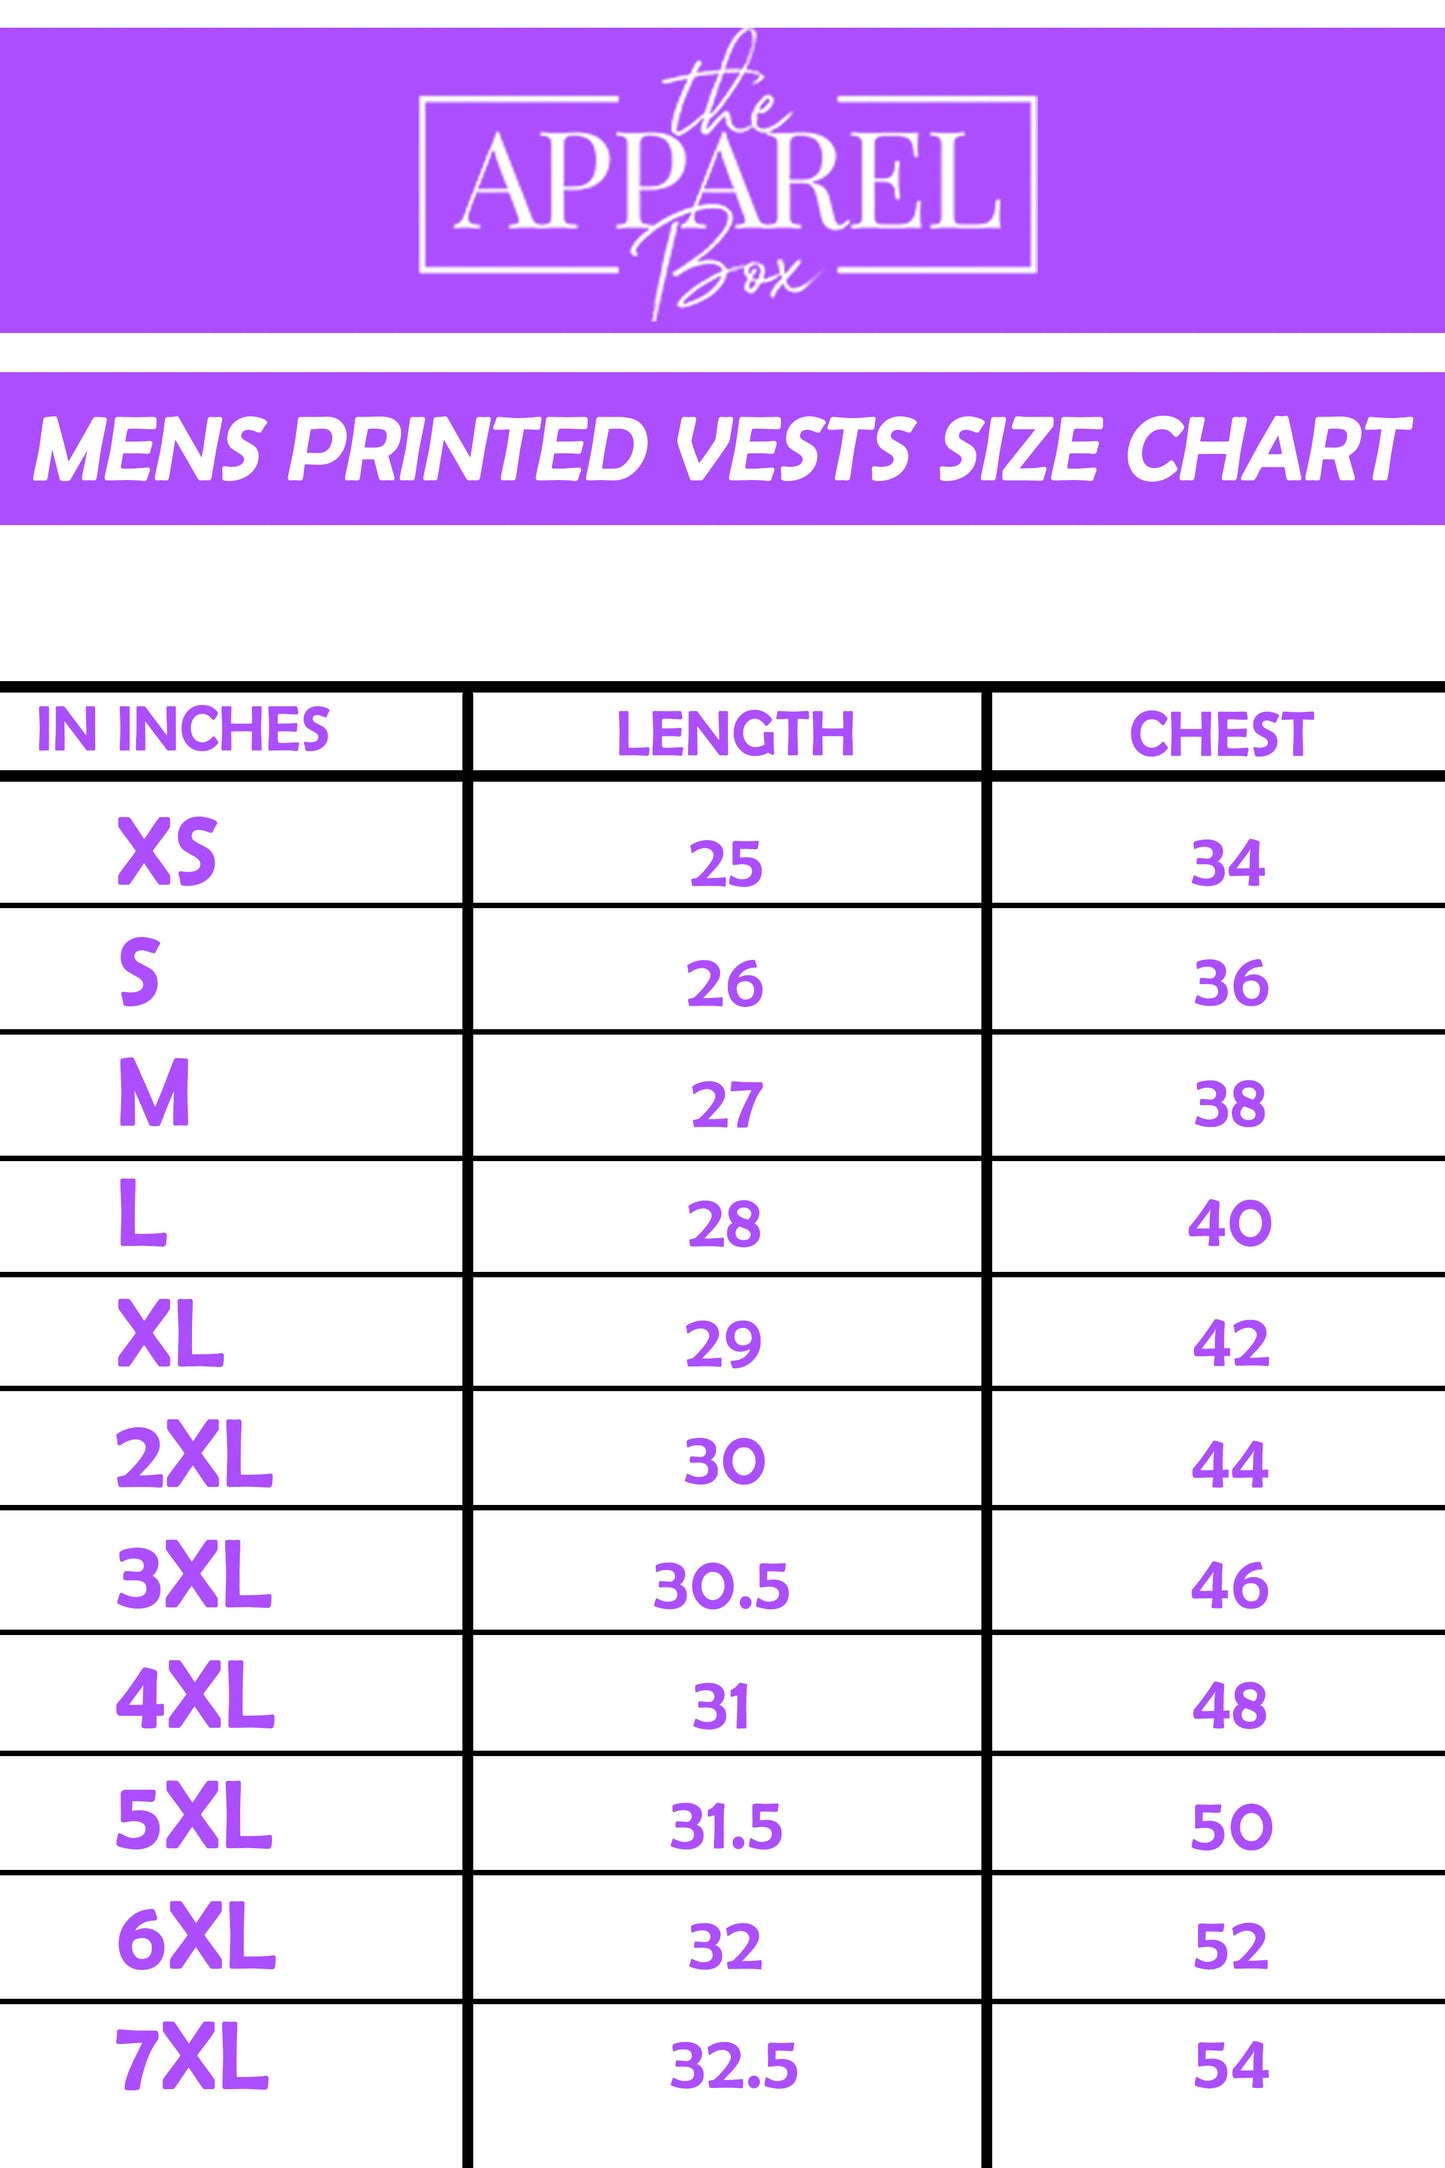 Printed Vest#7